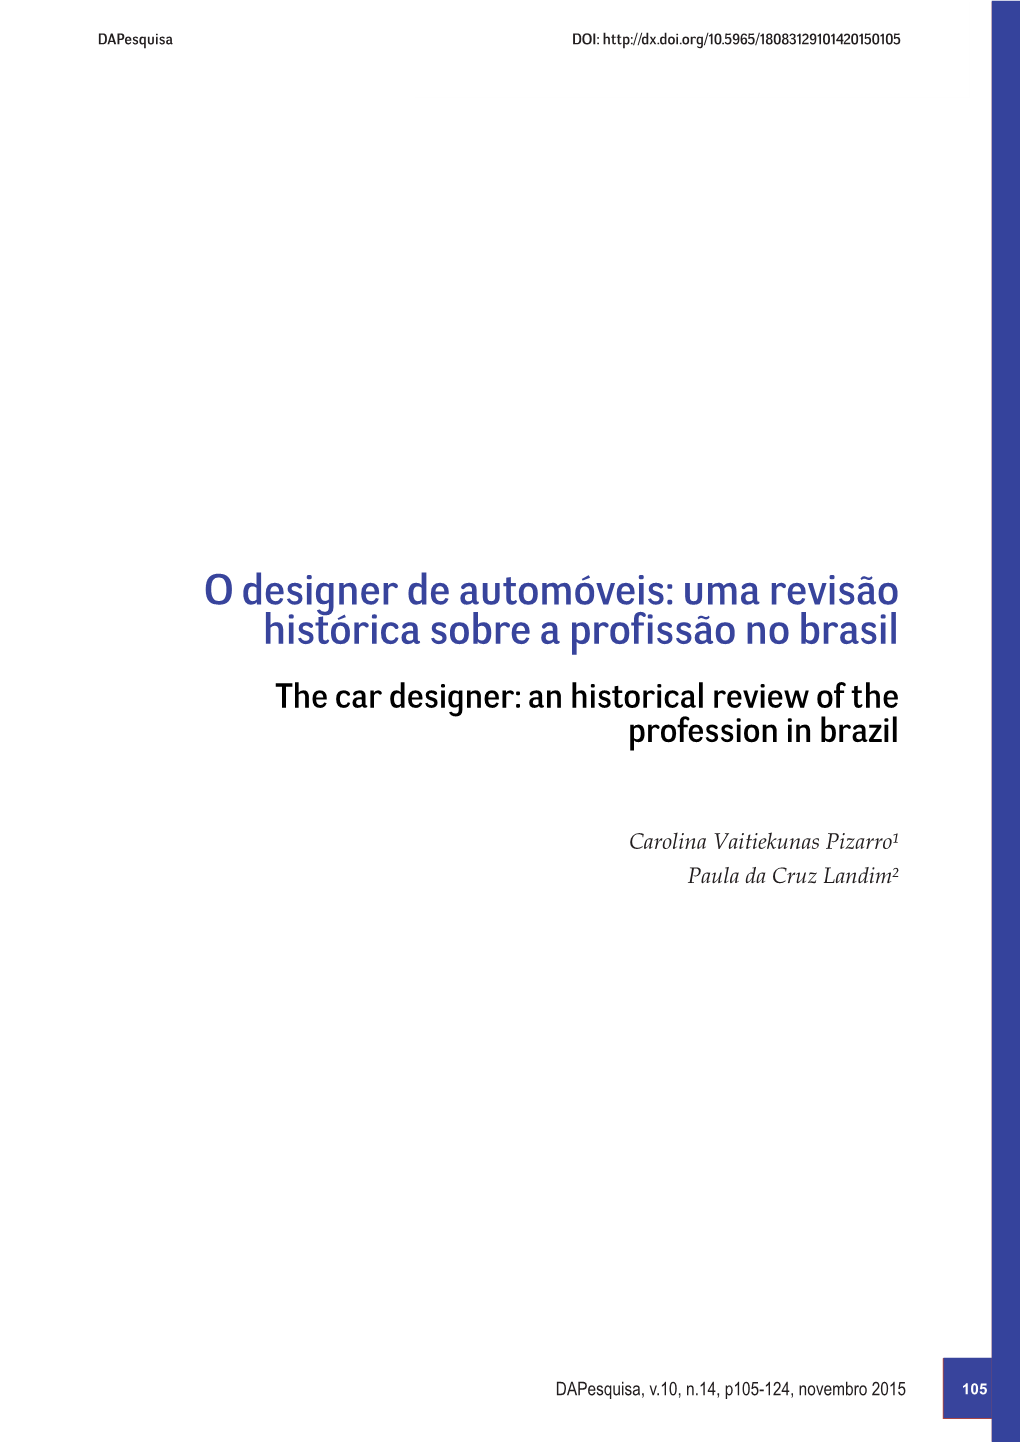 O Designer De Automóveis: Uma Revisão Histórica Sobre a Profissão No Brasil the Car Designer: an Historical Review of the Profession in Brazil